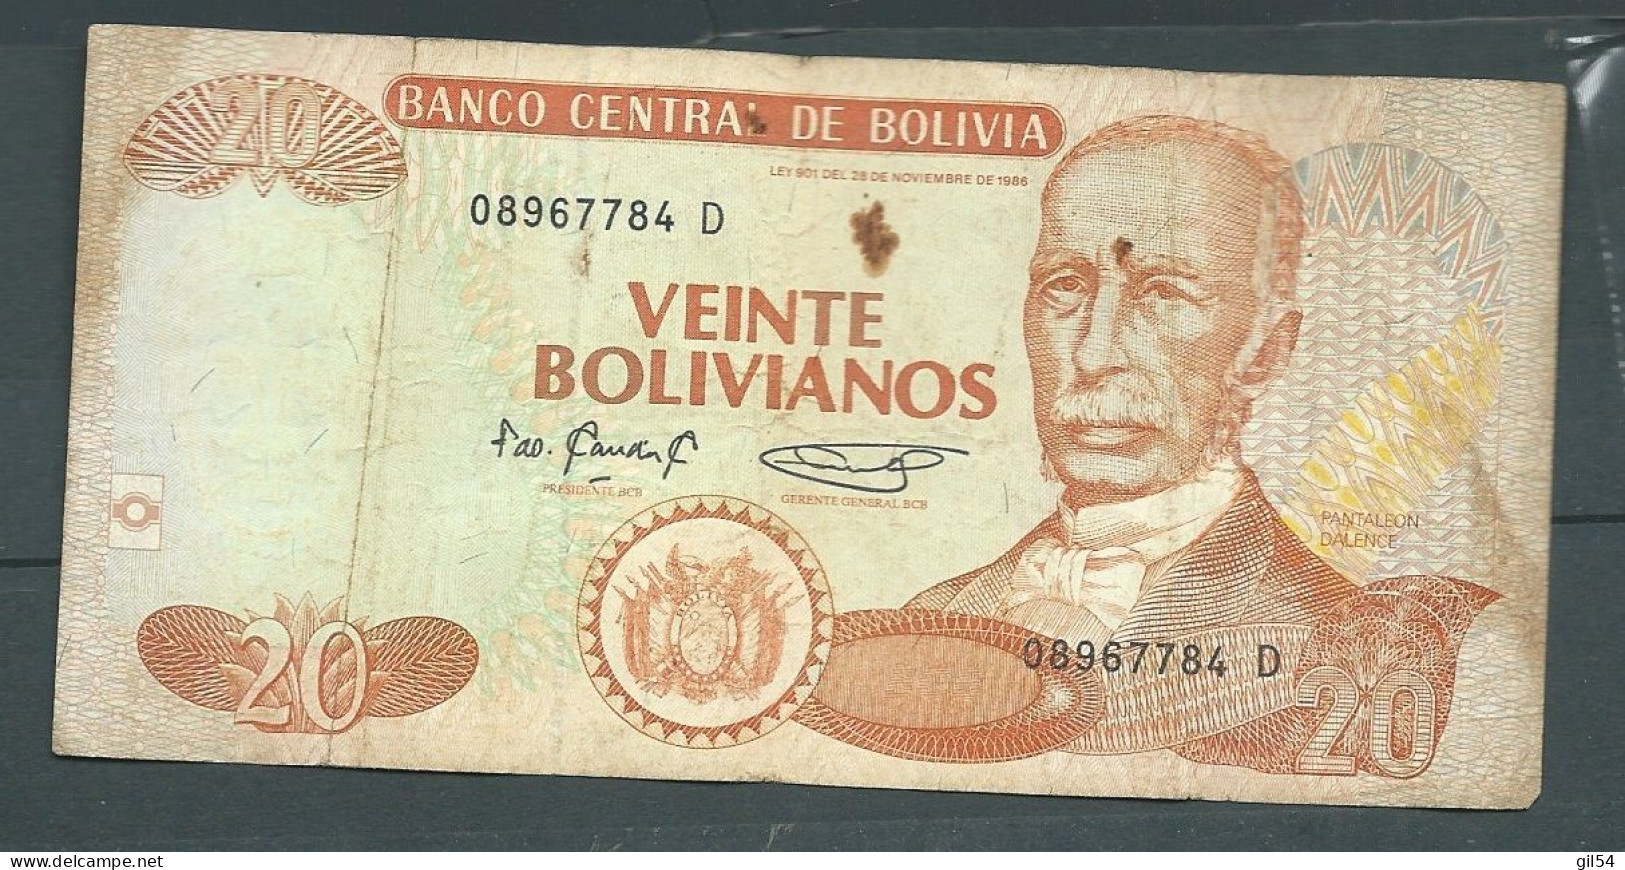 Bolivie - Bolivia 20 Bolivianos 1986  - 08967784 D - Laura 79 23 - Bolivia